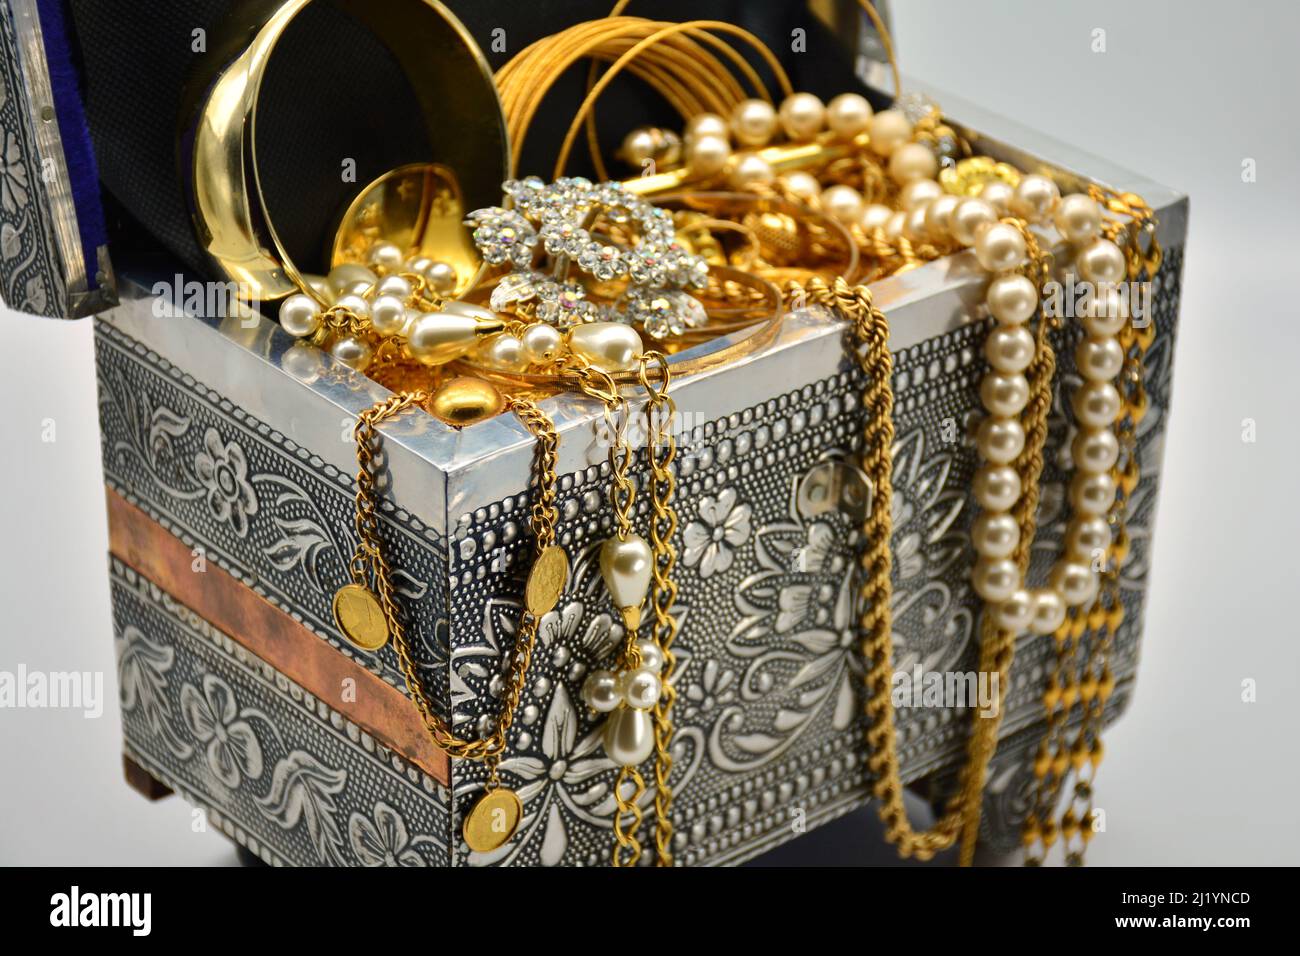 Un tesoro, cofre lleno de joyas, perlas, y oro, sobre fondo blanco Stock Photo